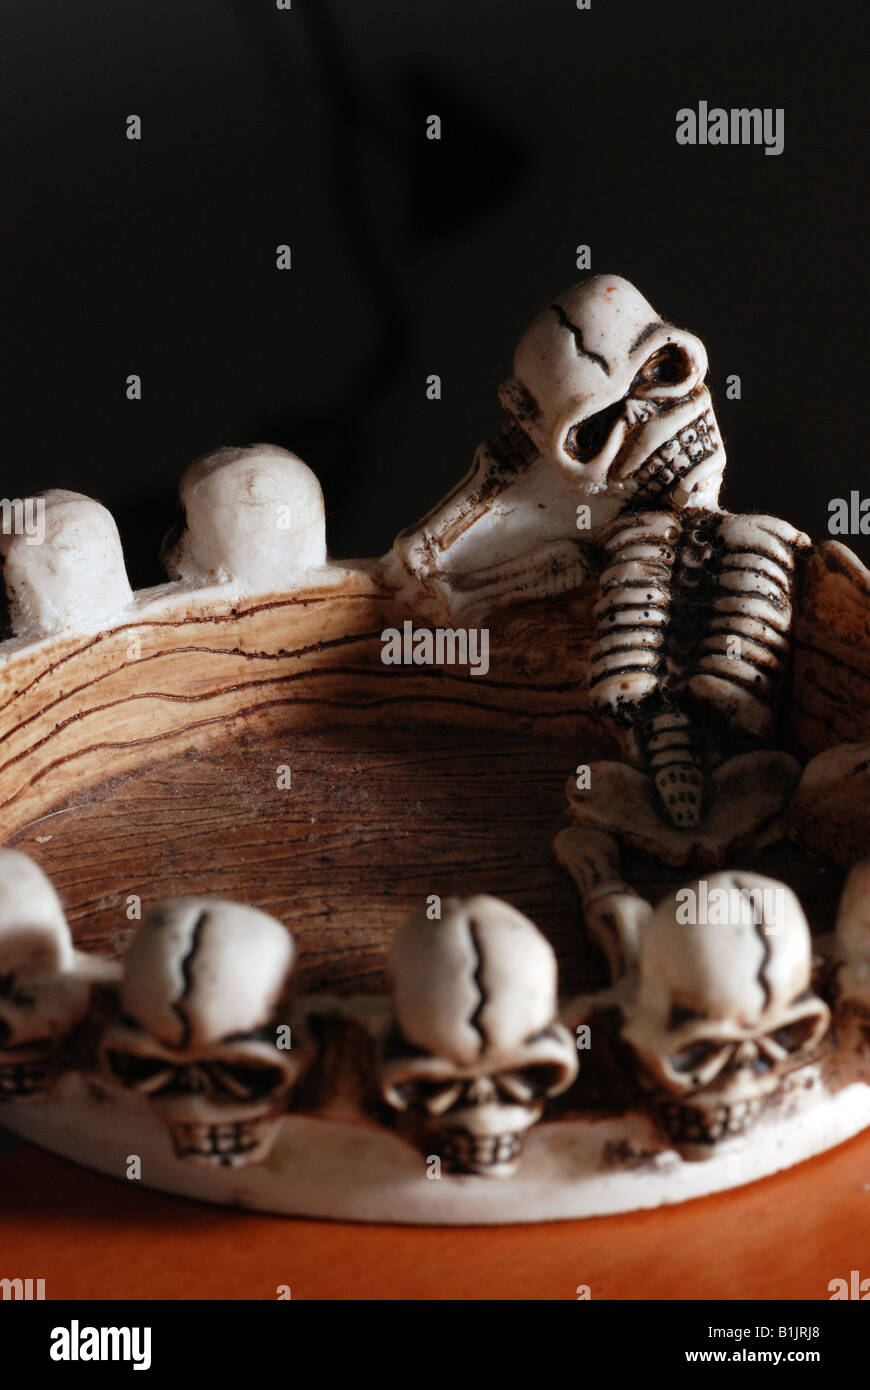 Lustige Aschenbecher mit Schädel und Skelett Stockfotografie - Alamy